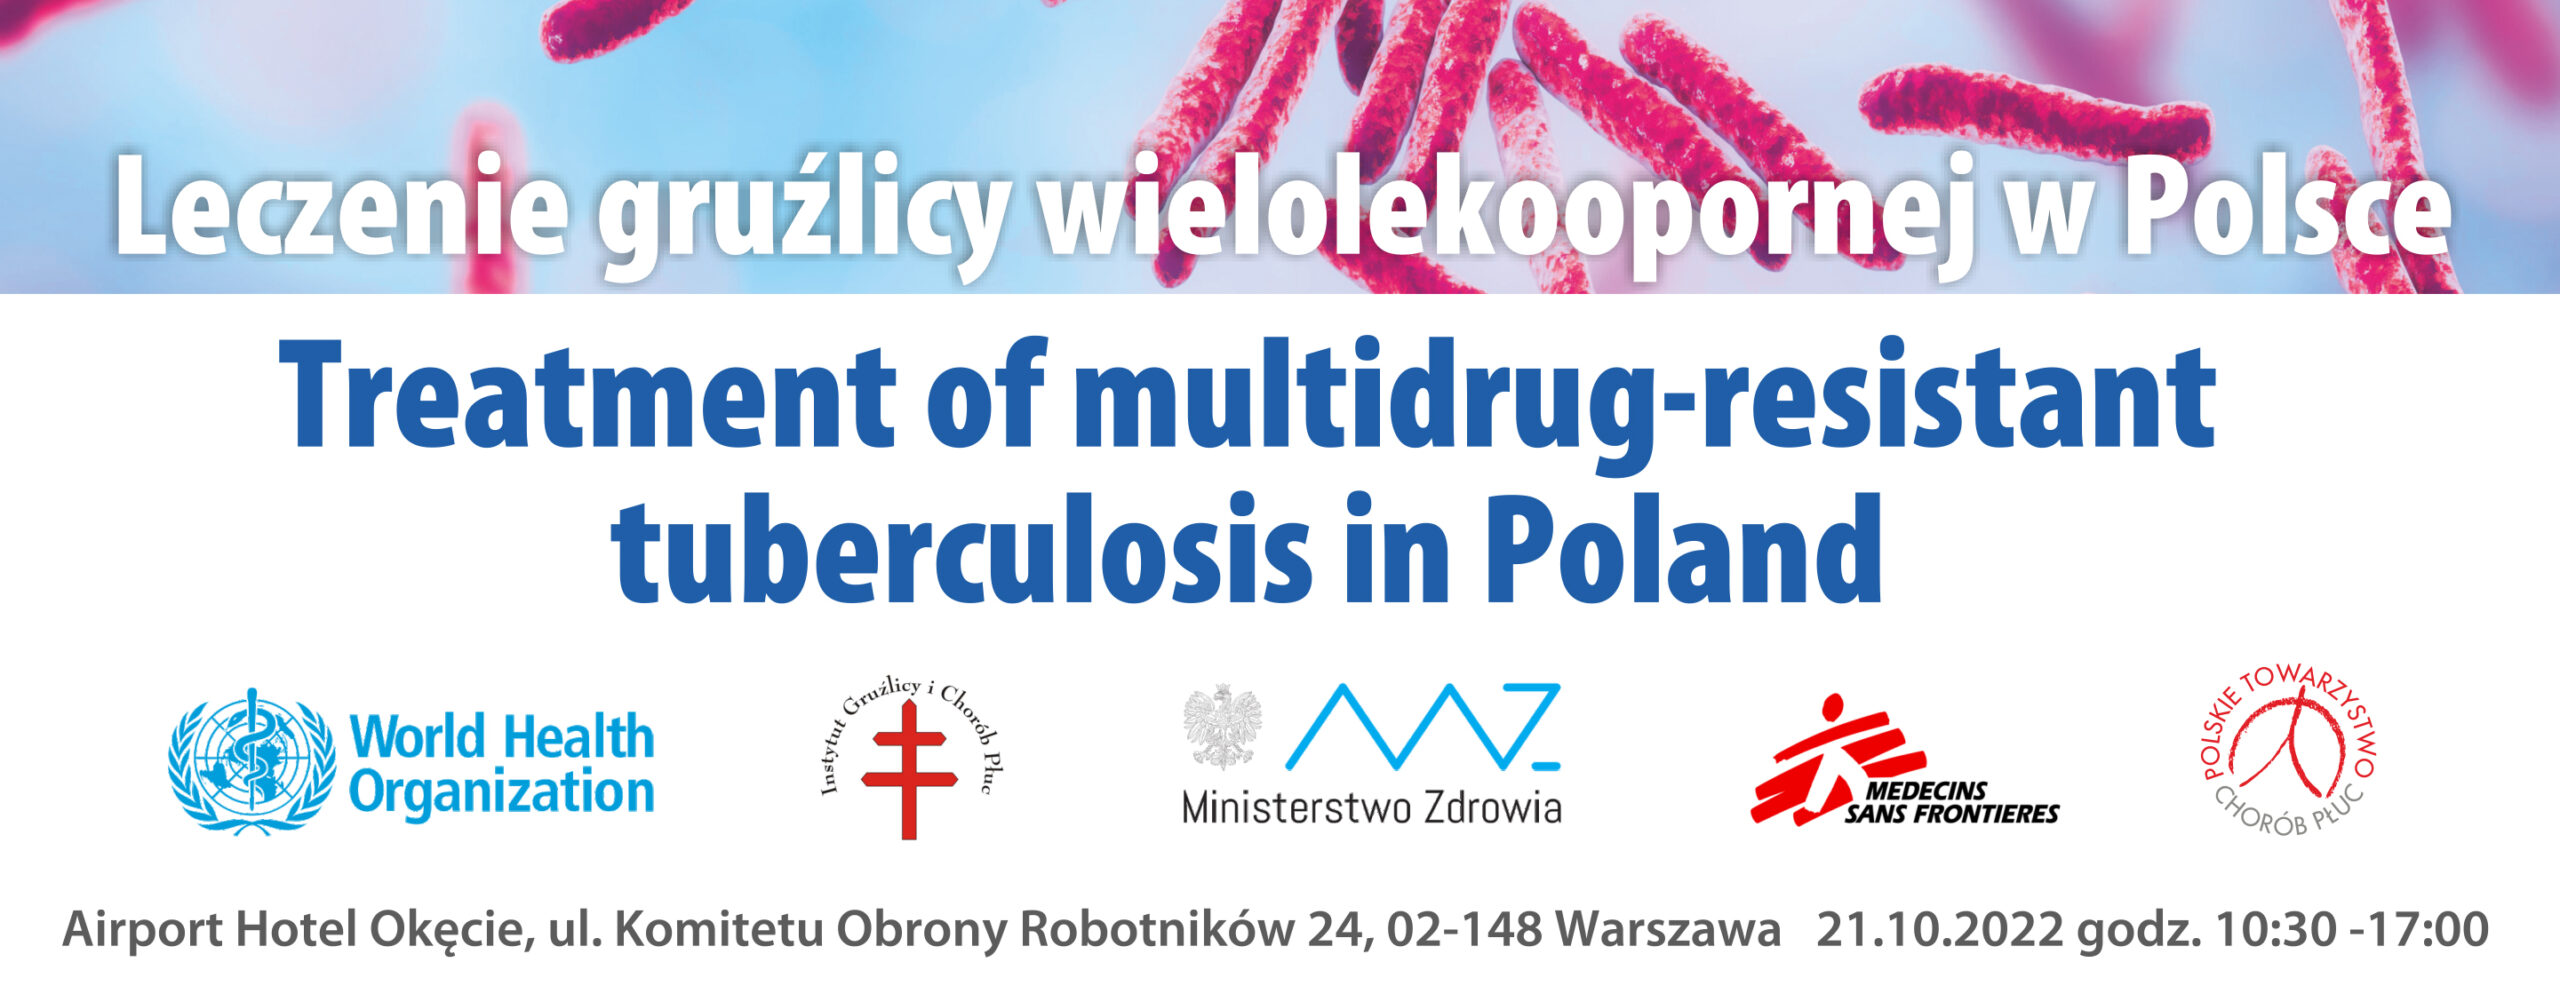 Leczenie gruźlicy wielolekoopornej w Polsce